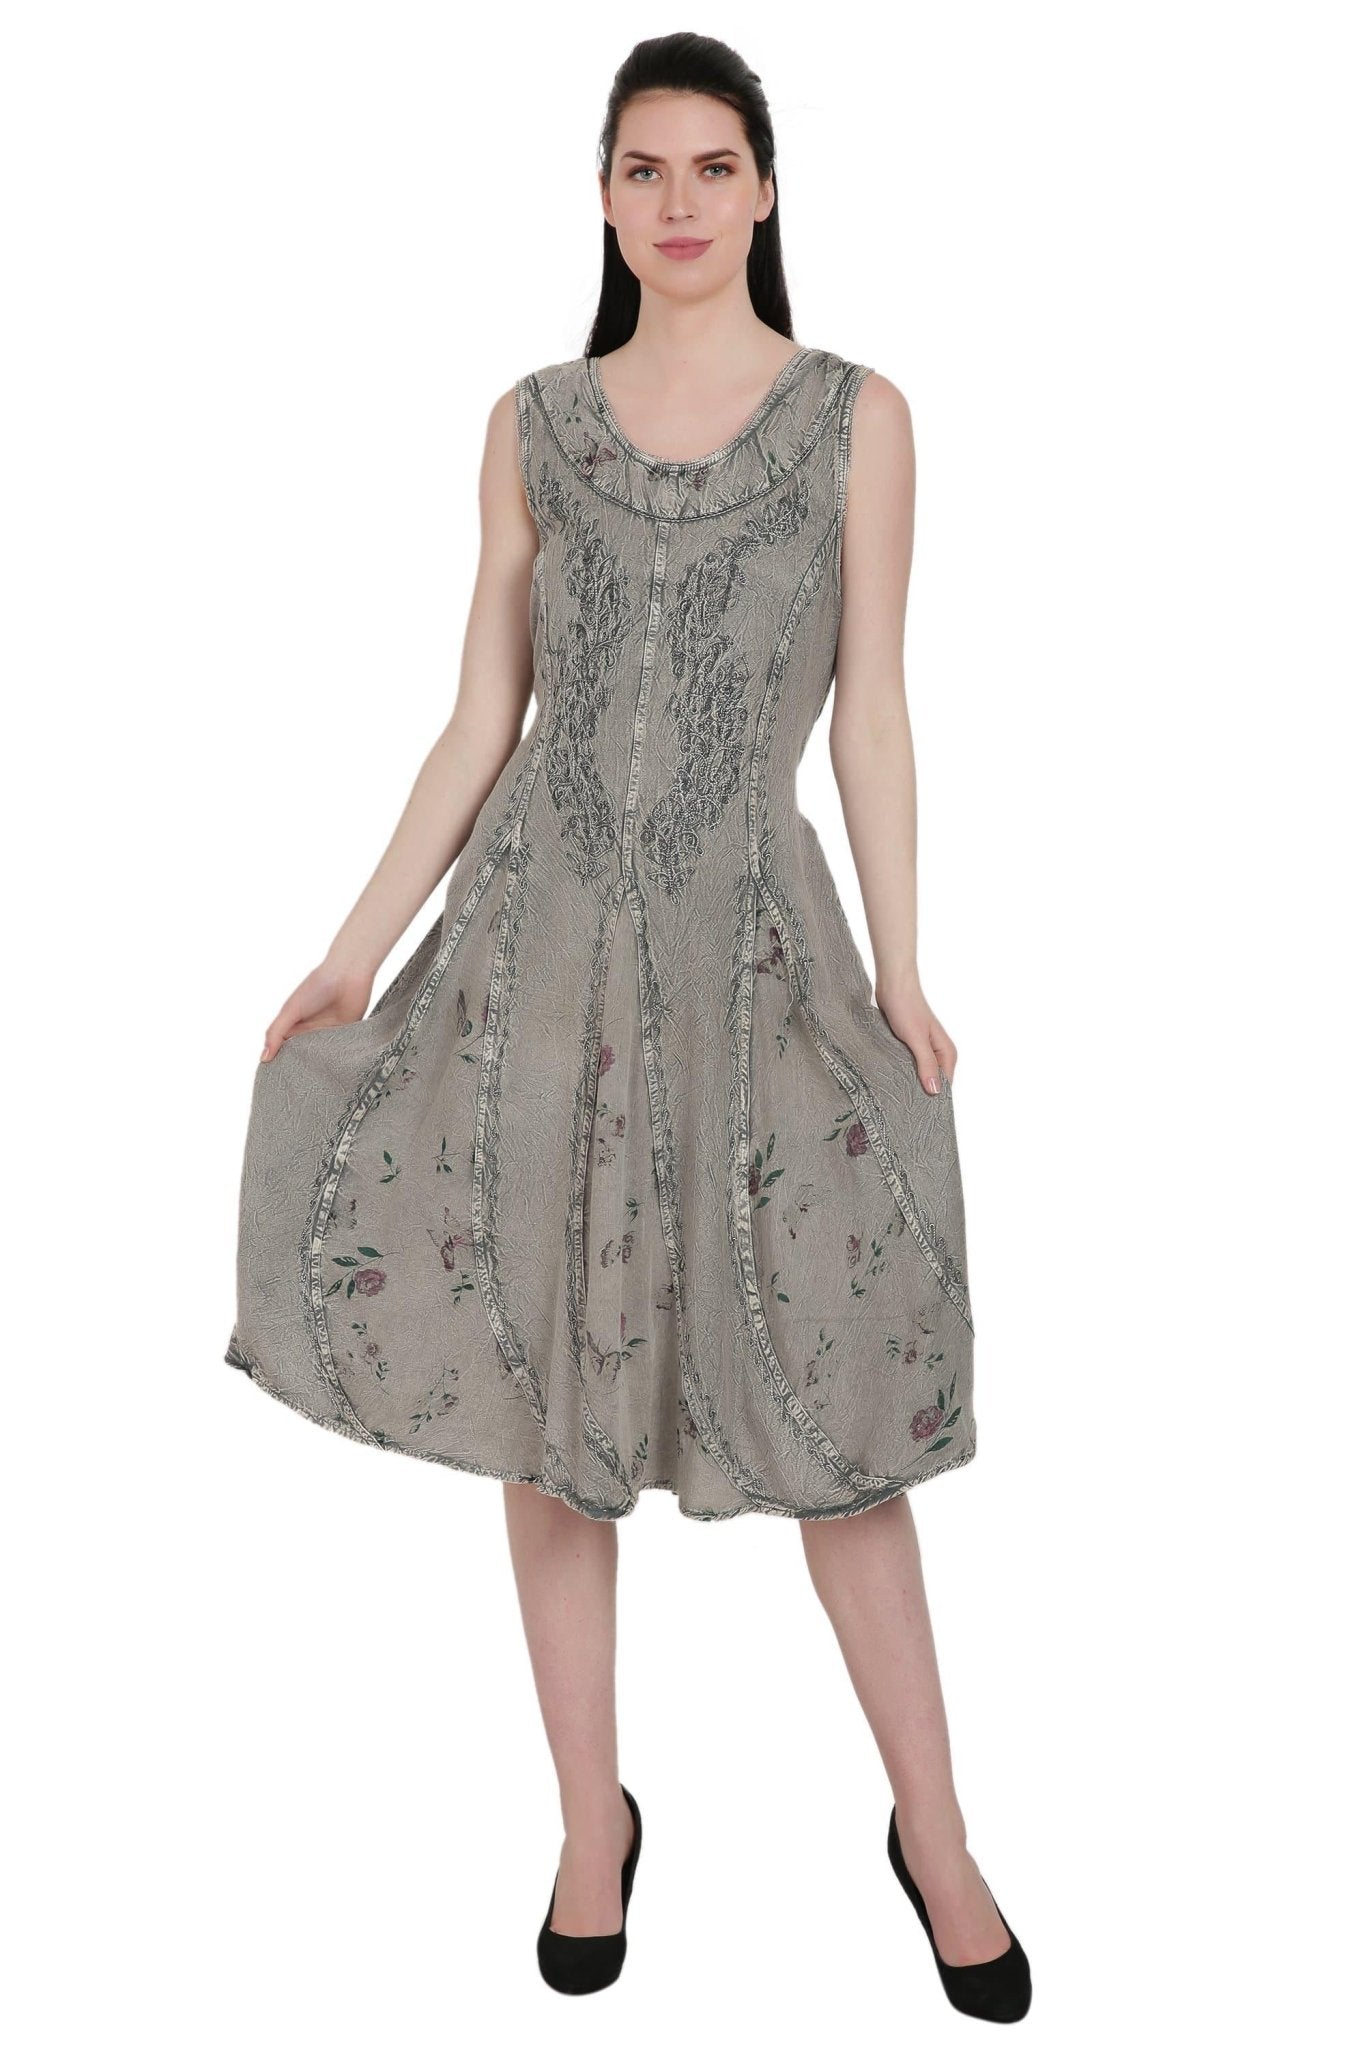 Floral Print Renaissance Dress ADL-20320 - Advance Apparels Inc